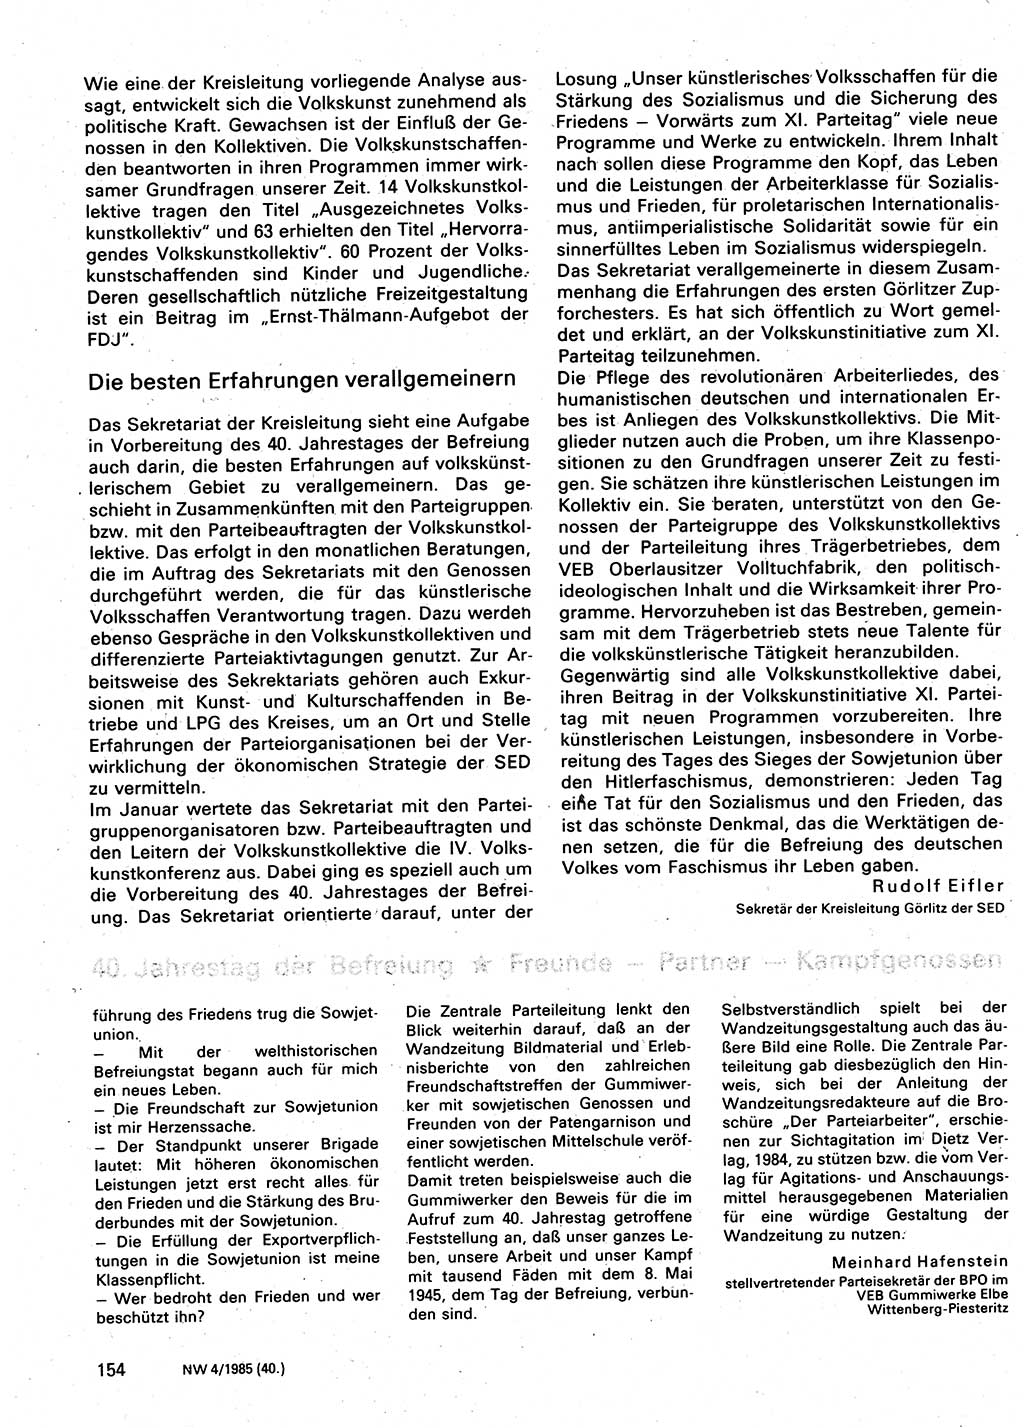 Neuer Weg (NW), Organ des Zentralkomitees (ZK) der SED (Sozialistische Einheitspartei Deutschlands) für Fragen des Parteilebens, 40. Jahrgang [Deutsche Demokratische Republik (DDR)] 1985, Seite 154 (NW ZK SED DDR 1985, S. 154)